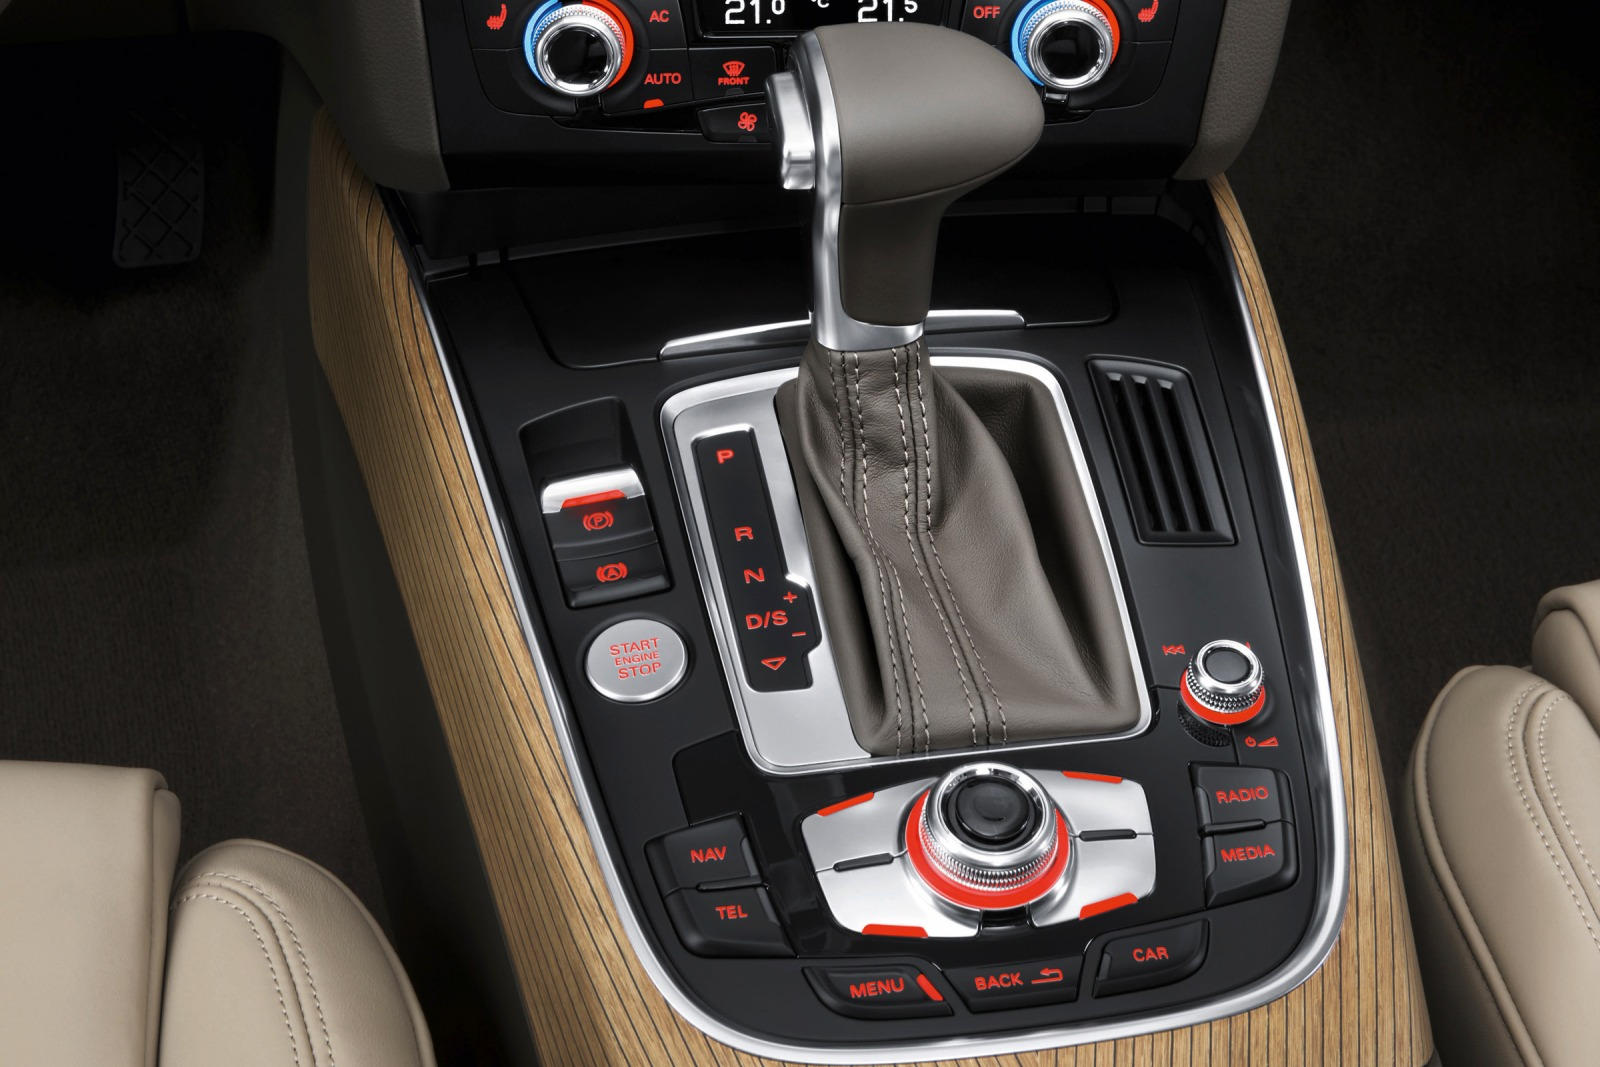 2016 Audi Q5 Interior Photos | CarBuzz